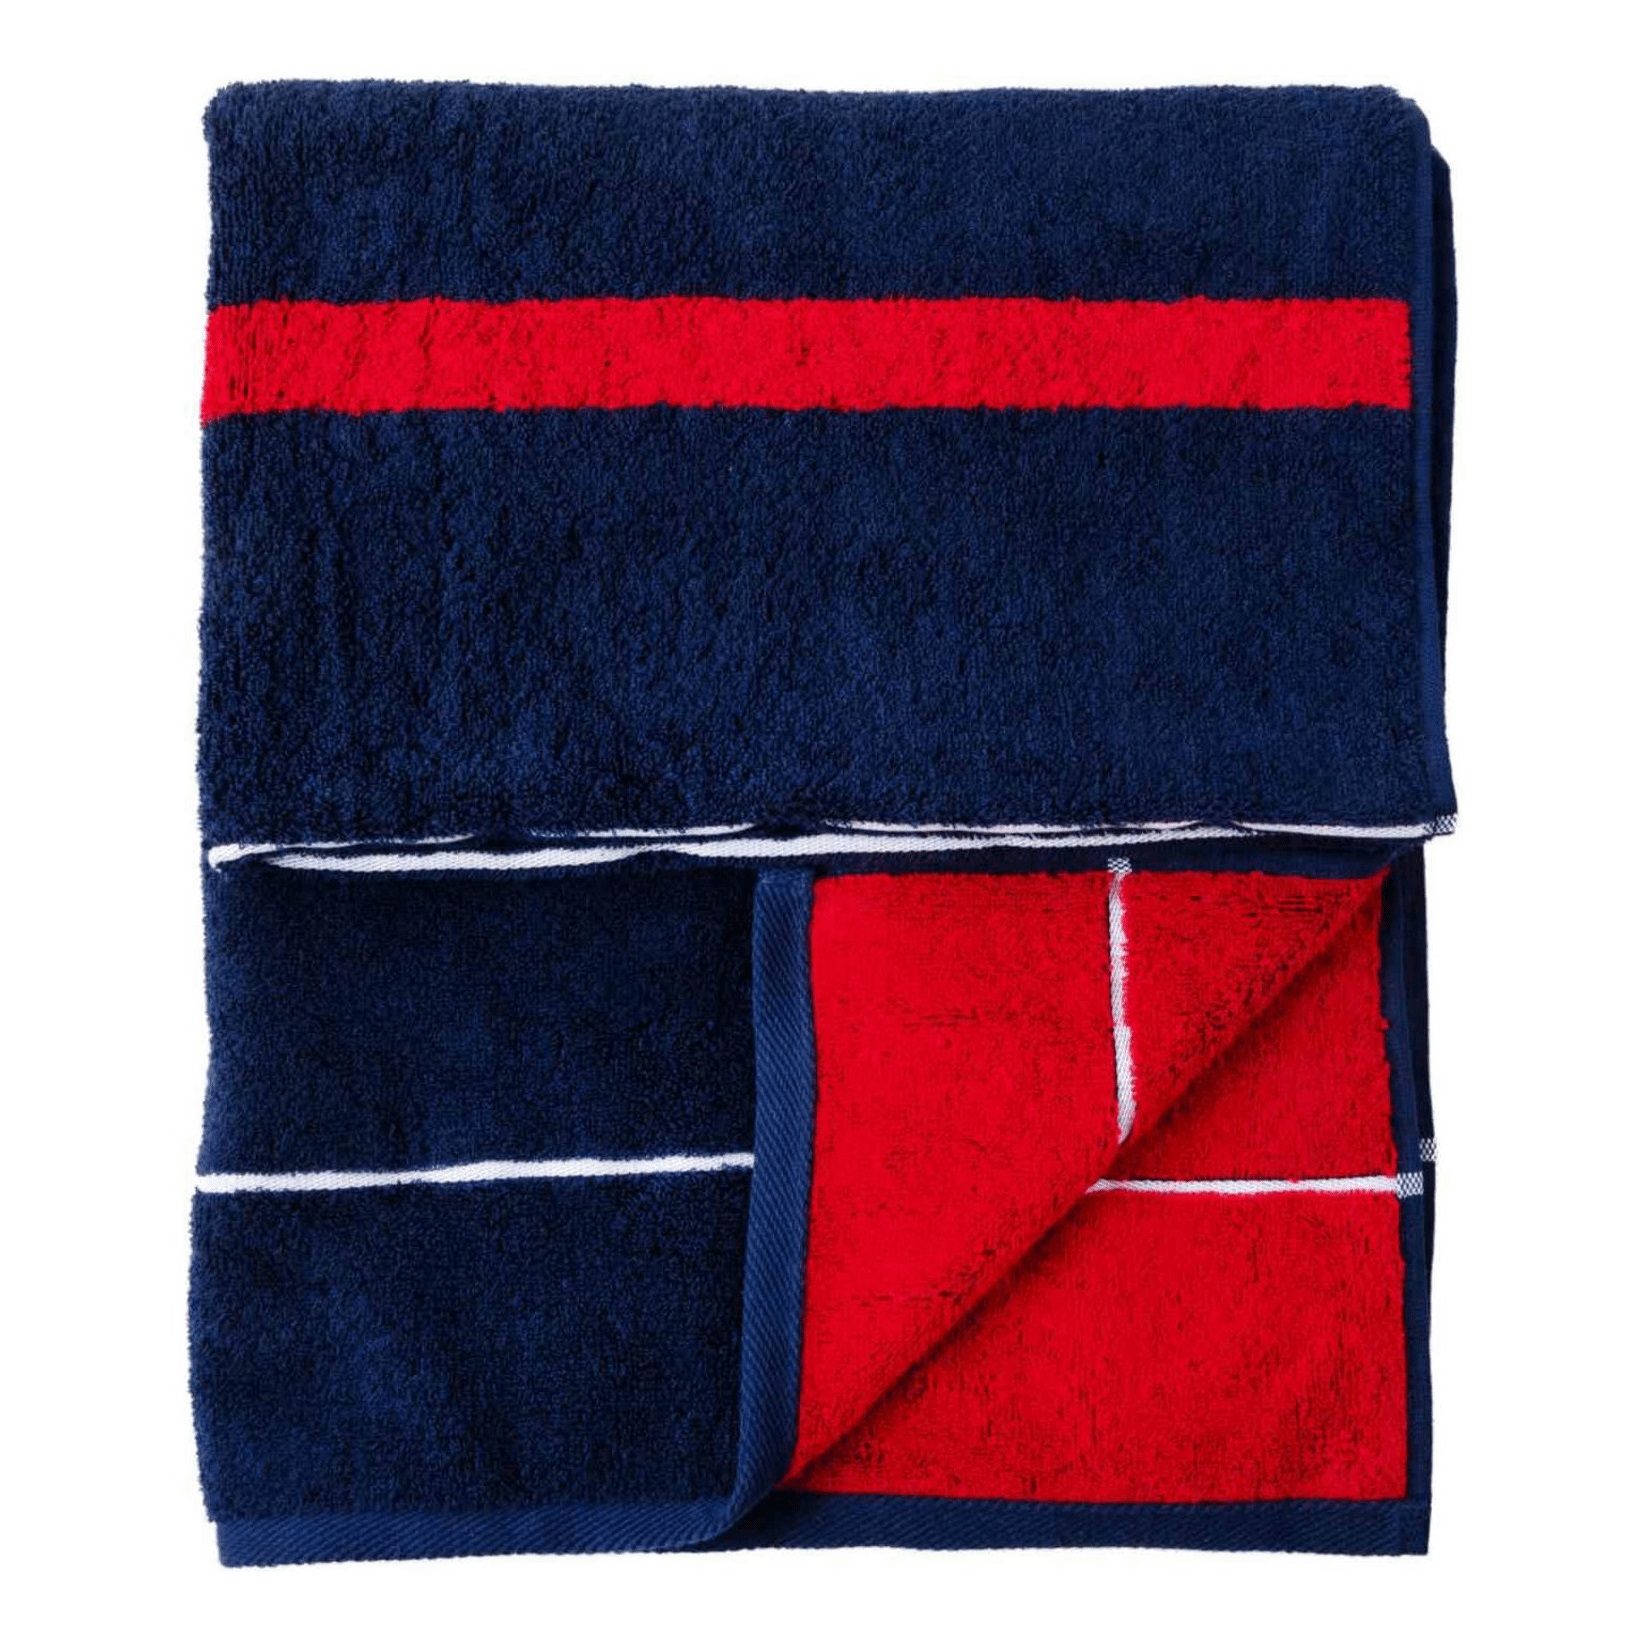 Полотенце DM Текстиль Schooner 70 х 130 см махровое темно-синее-красное